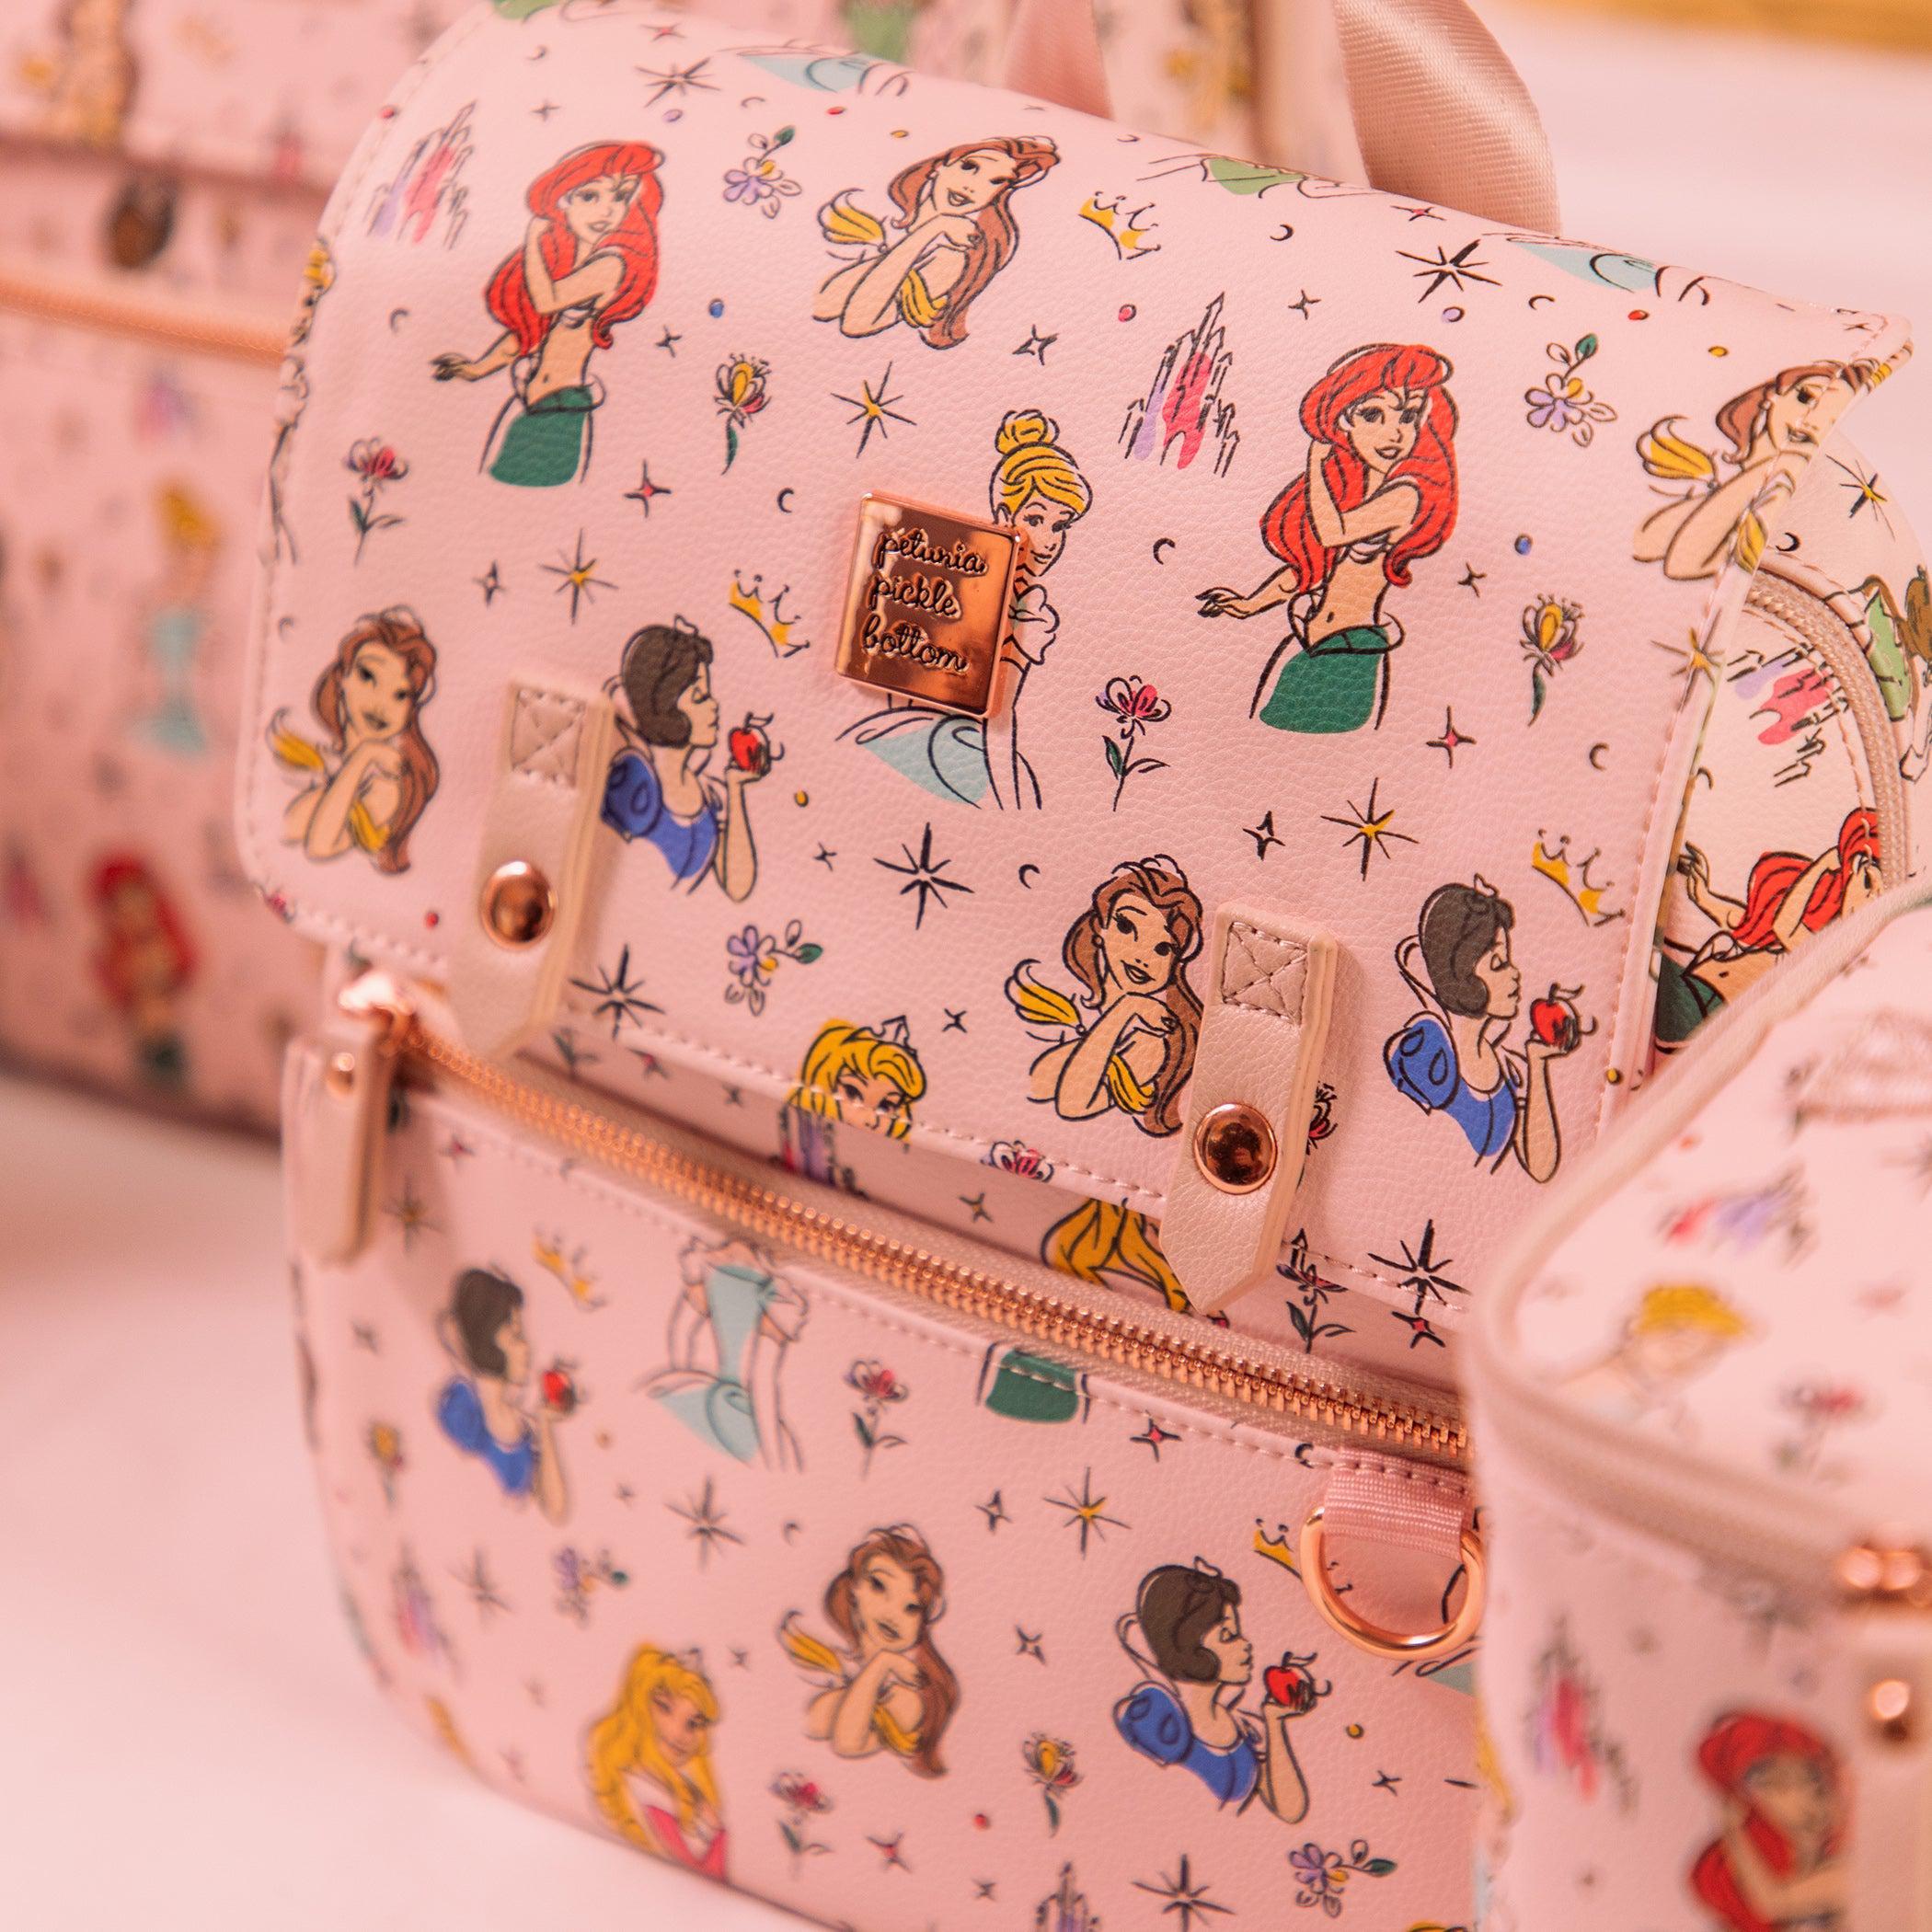 Petunia Pickle Bottom Mini Meta Backpack in Disney Princess